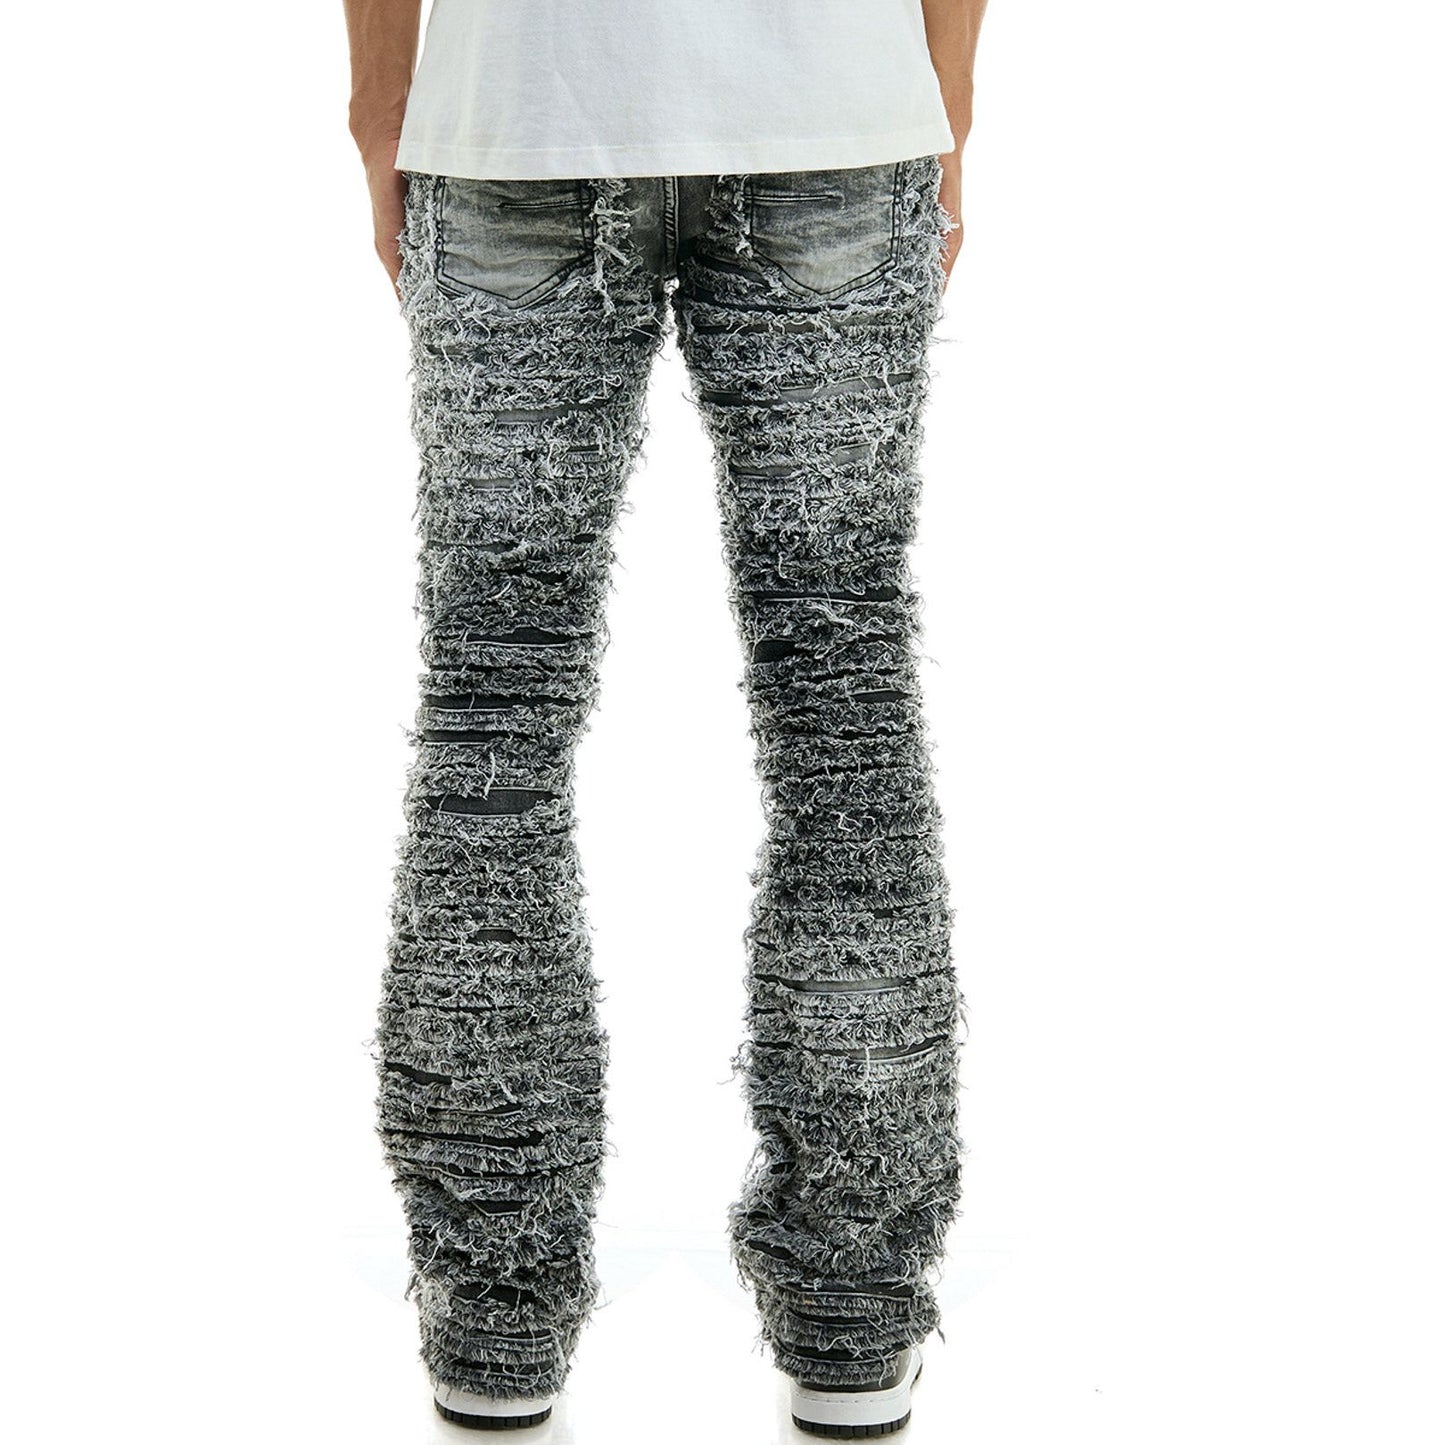 KDNK - Blaze Distressed Jeans - Grey